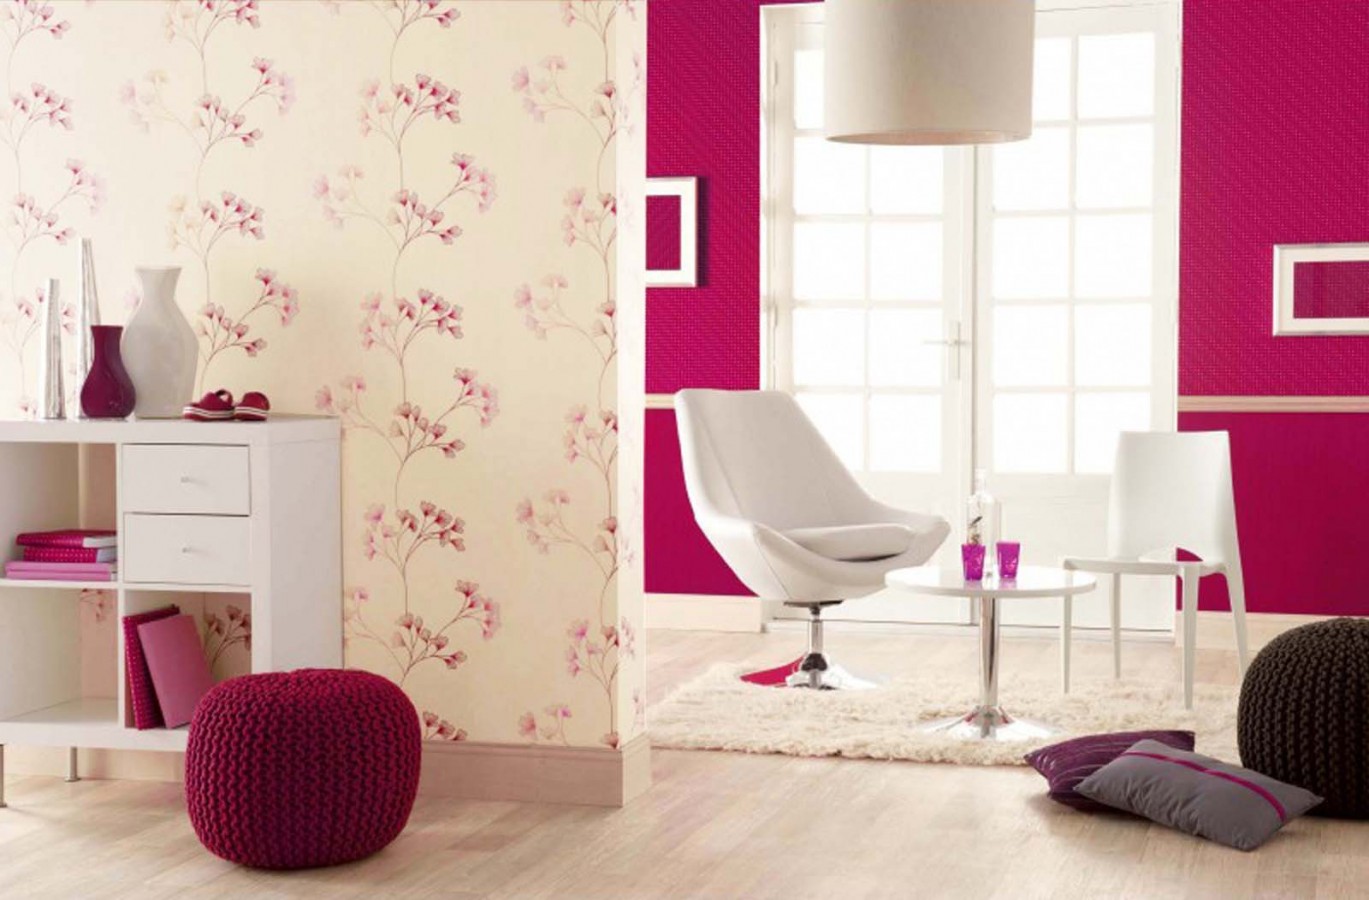 Papel pintado floral con dibujos de pétalos pequeños rosa intenso fondo blanco roto Emilce 421539